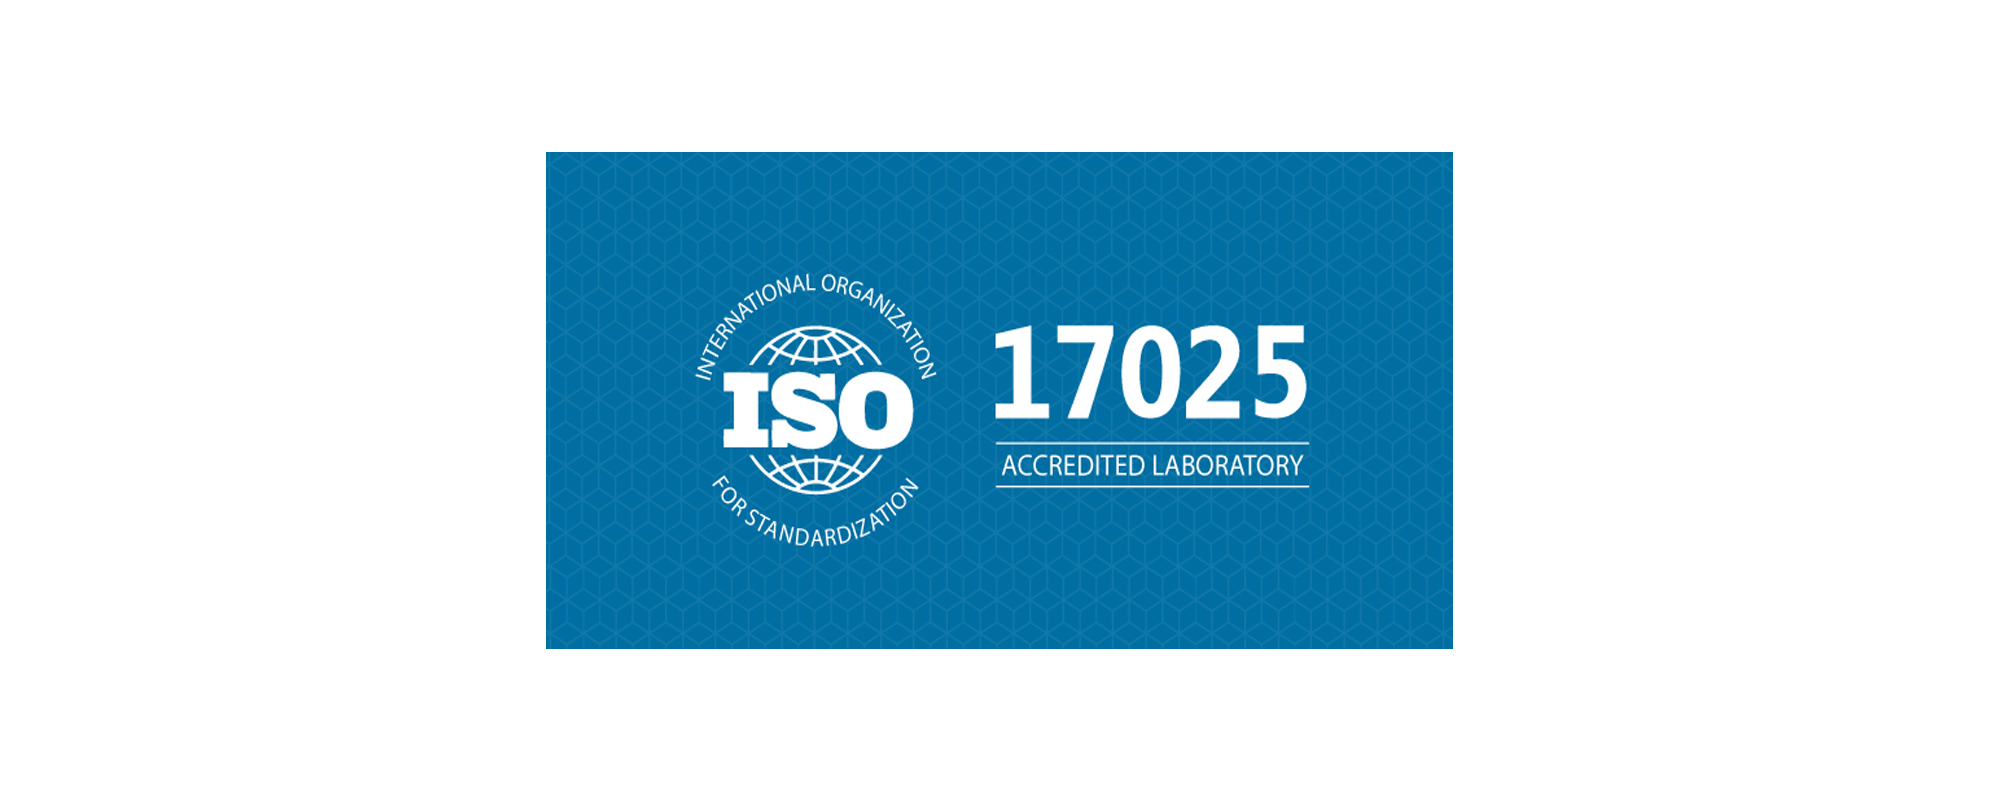 ドローン測量の分野で世界初のISO/IEC17025:2005の認定を受けることで、国内で唯一ドローン測量で精度保証を行うことが出来るようになりました。